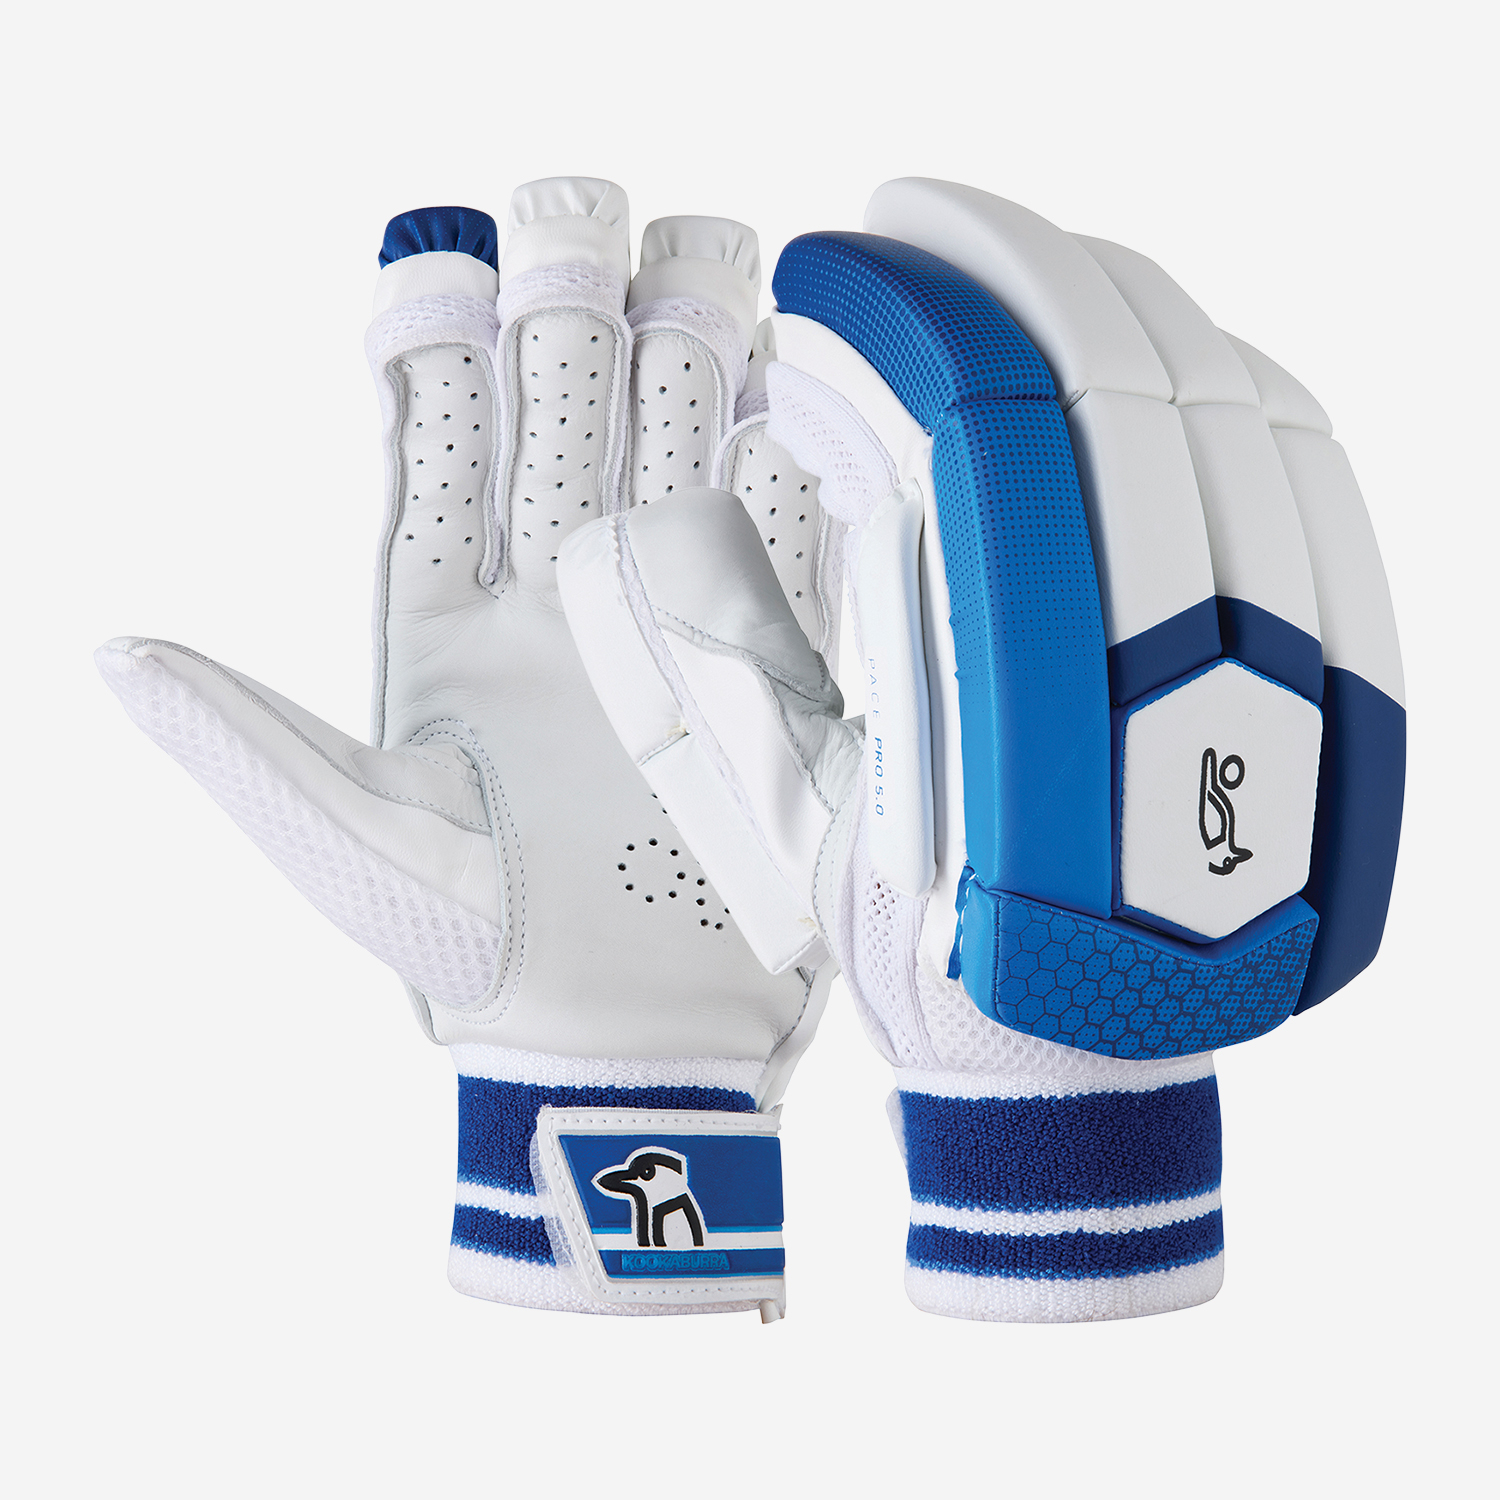 Kookaburra 300 Boys Hand Protection Mitts Wicket Keeping Keeper Gloves 